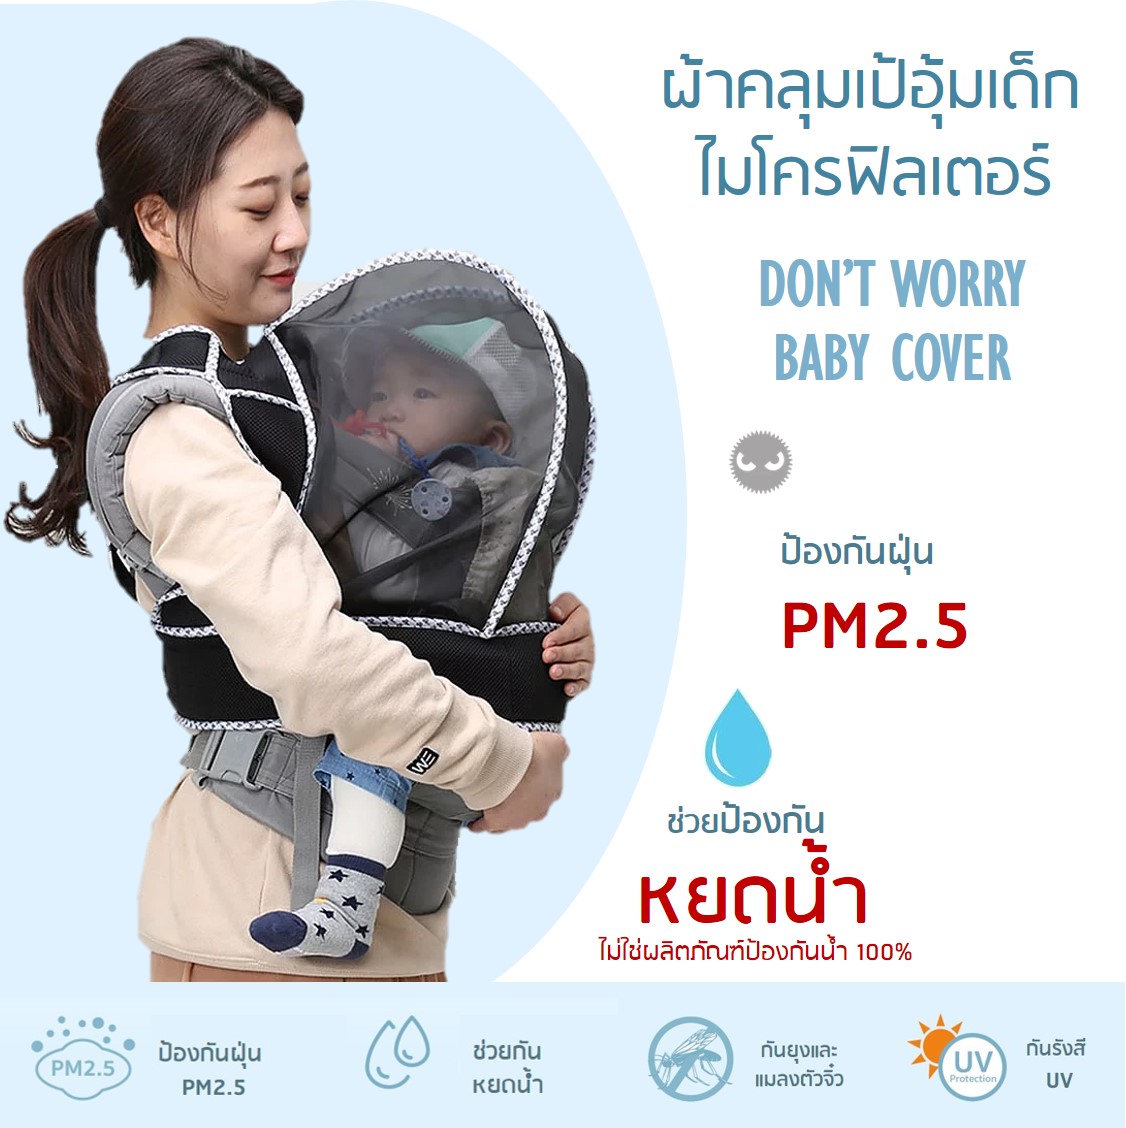 ผ้าคลุมเป้อุ้มเด็กไมโครฟิลเตอร์ Don't Worry Baby Cover (สีดำ) กันฝุ่น PM2.5 กันแมลง กันเกสรดอกไม้ หายใจสะดวก Made in Korea